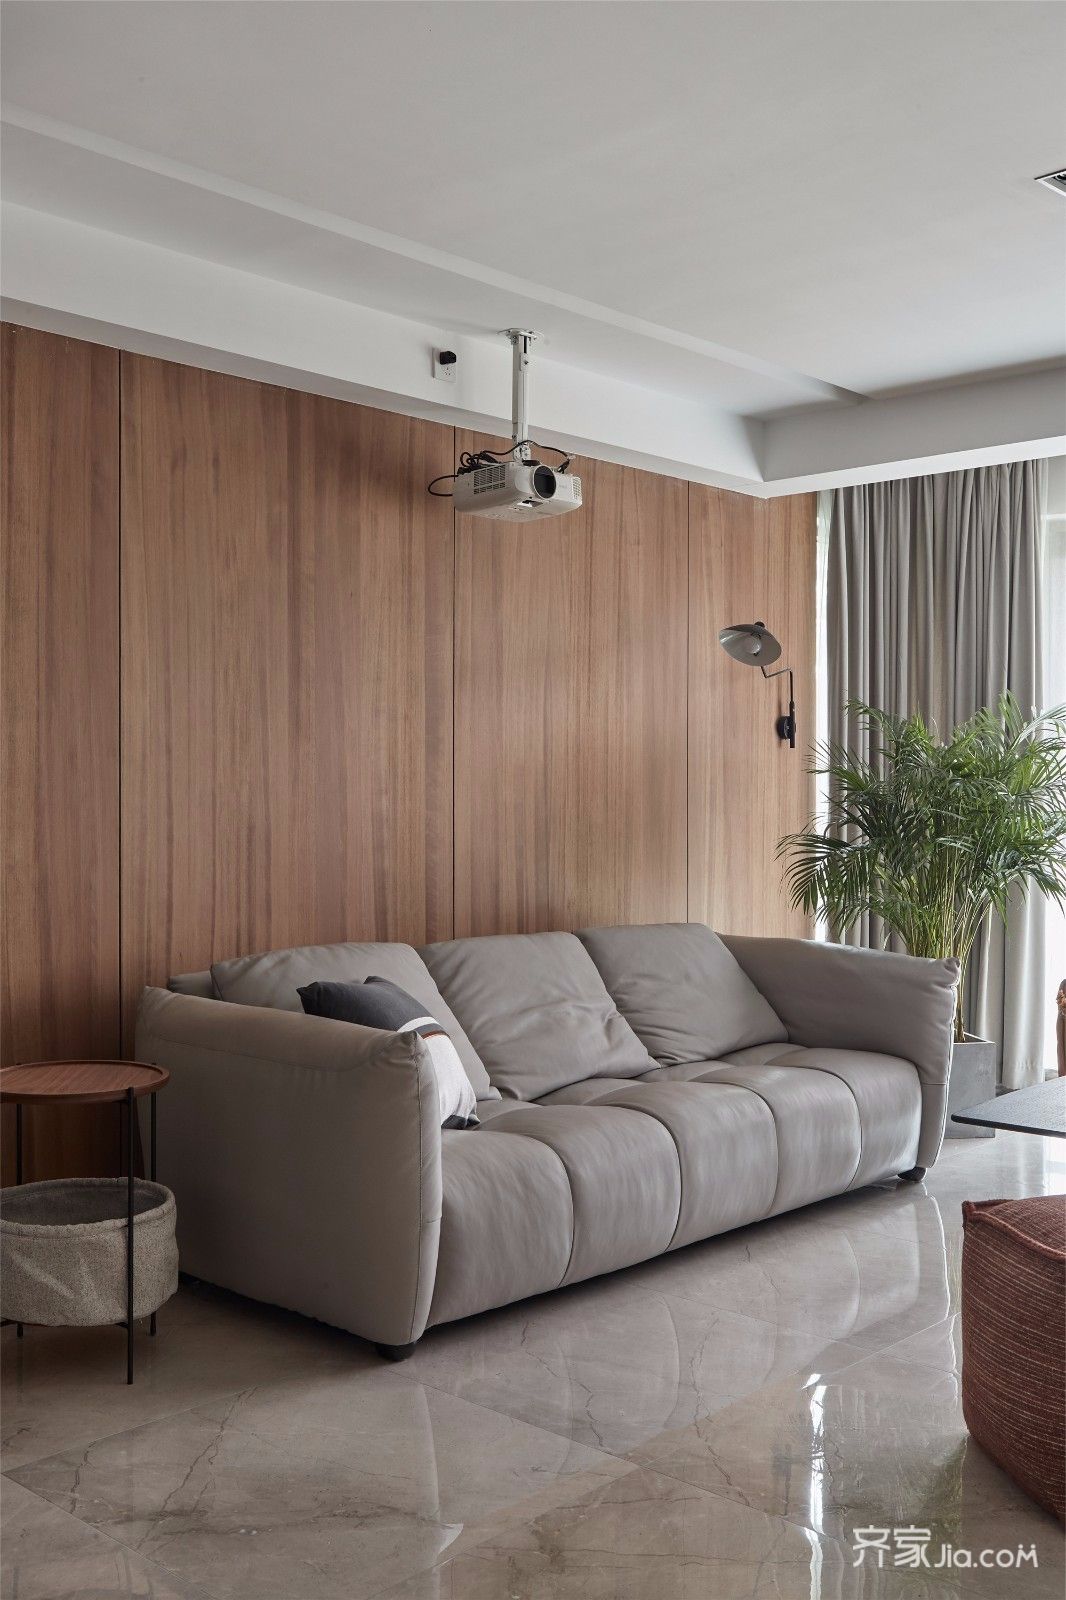 一整面木饰面作沙发背景墙,温暖柔和,与一旁的橘色沙发也有所